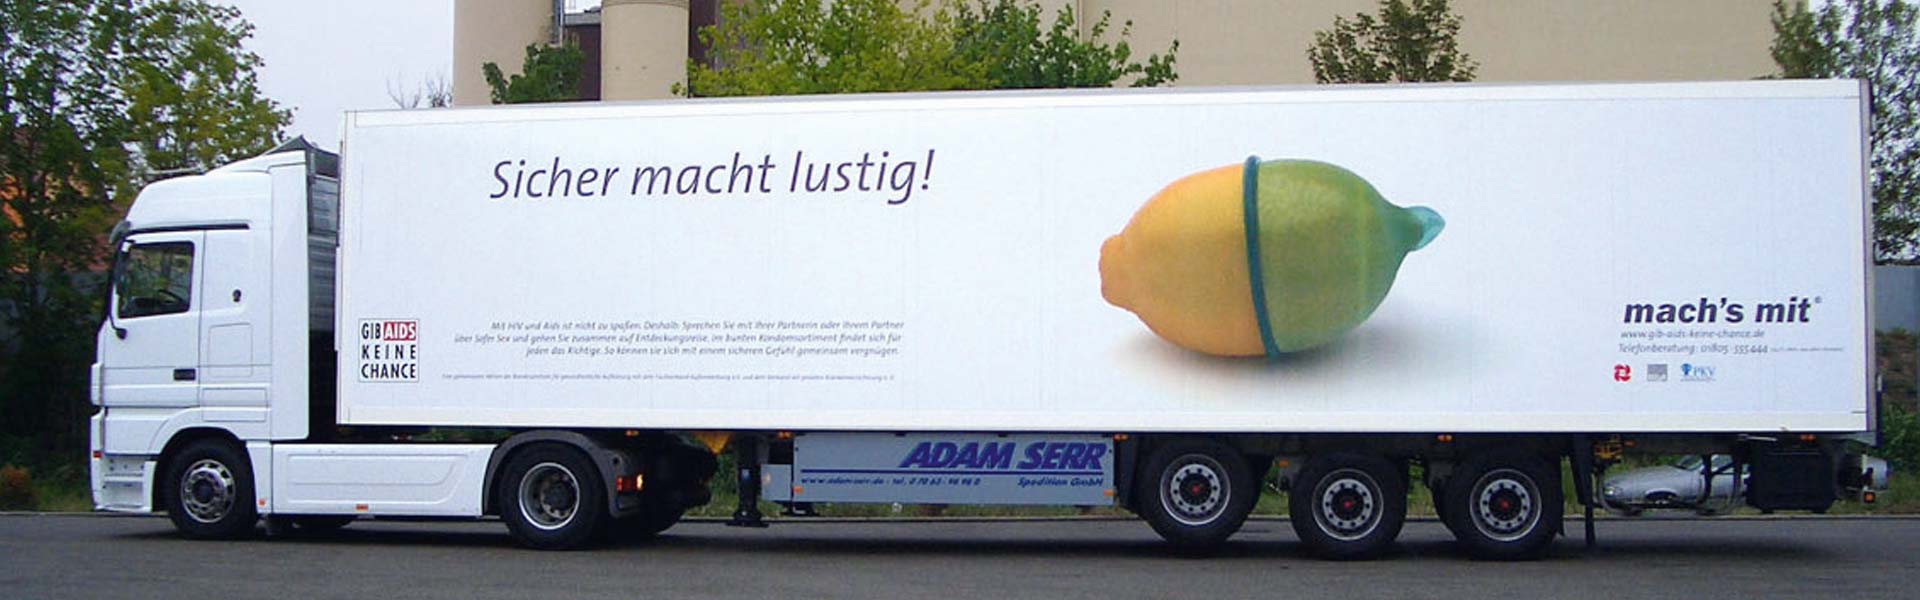 Mobile Werbung - Werbung auf LKW